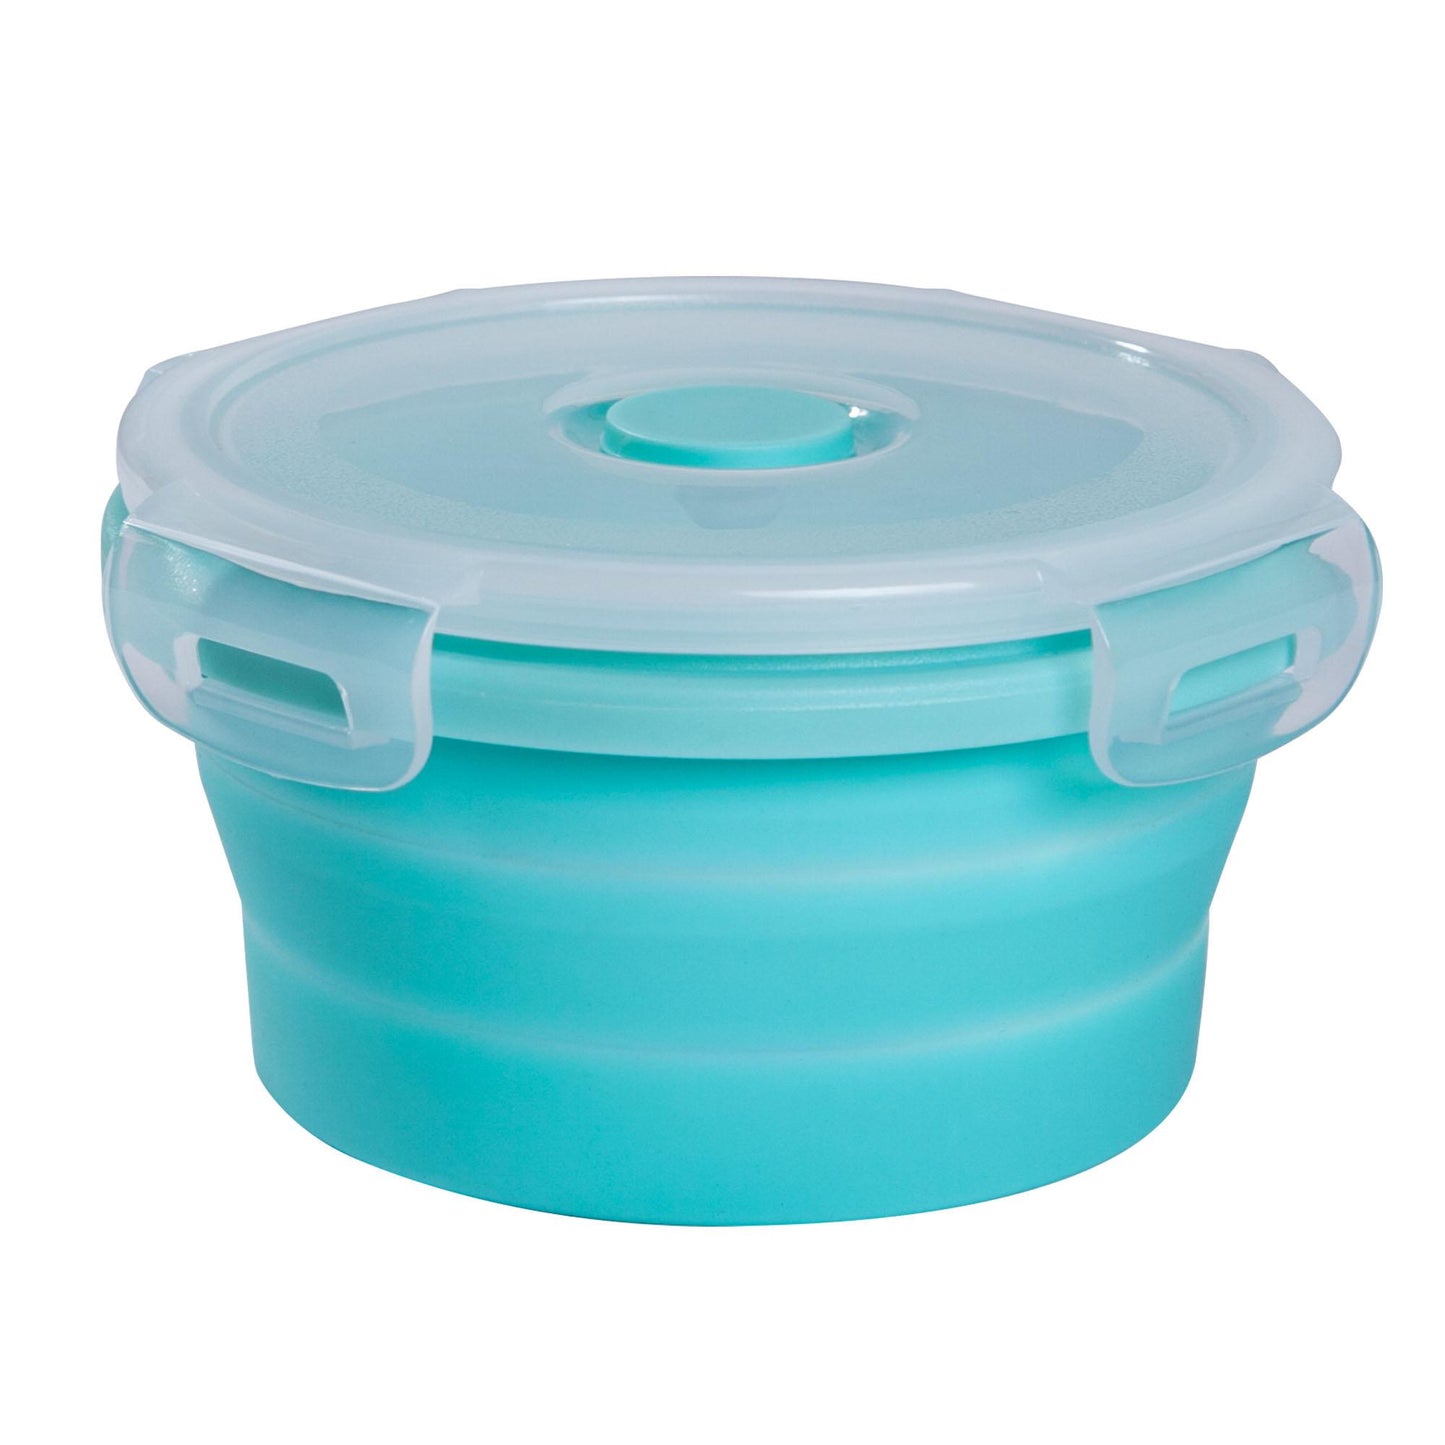 mixcover faltbare Frischhaltedose mit Deckel aus Silikon Bentobox Brotdose Lunchbox Picknick Camping Schüssel BPA-frei platzsparend 500 ml grün